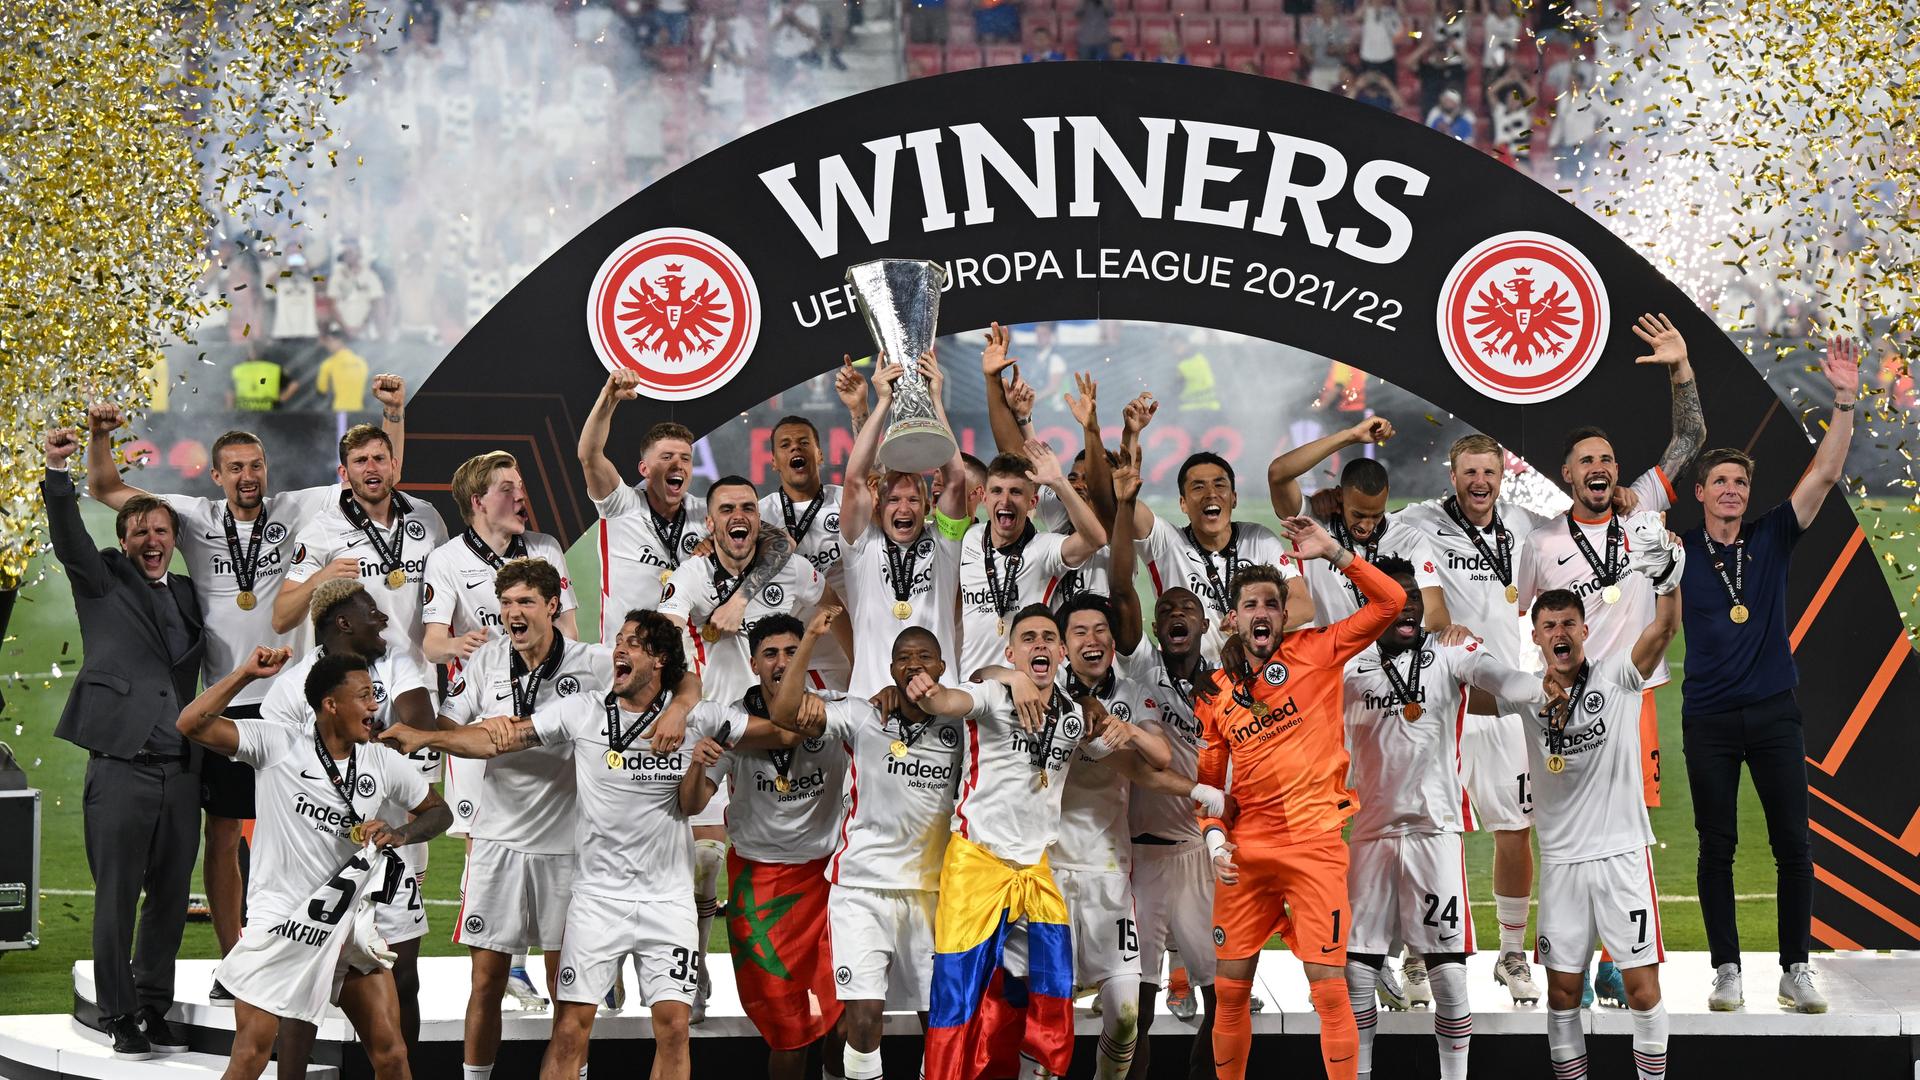 Eintracht Frankfurt - Europa-League-Titel beschert Verein starkes Mitgliederwachstum